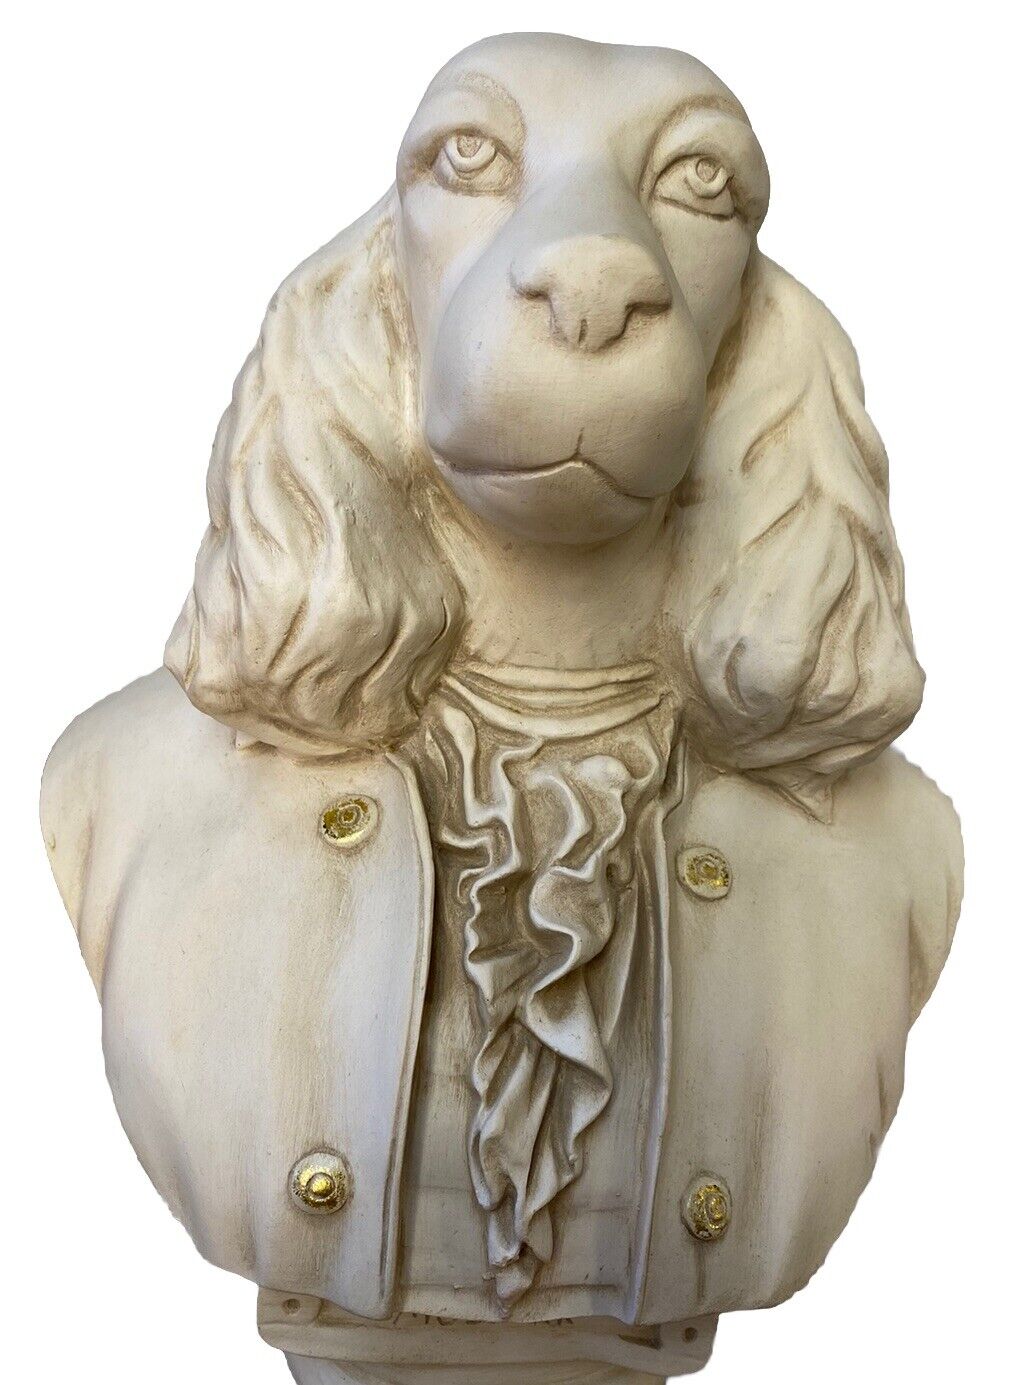 Mozbark Ceramic Dog Bust Statue 16” Mozart Composer Cocker Spaniel Home Decor